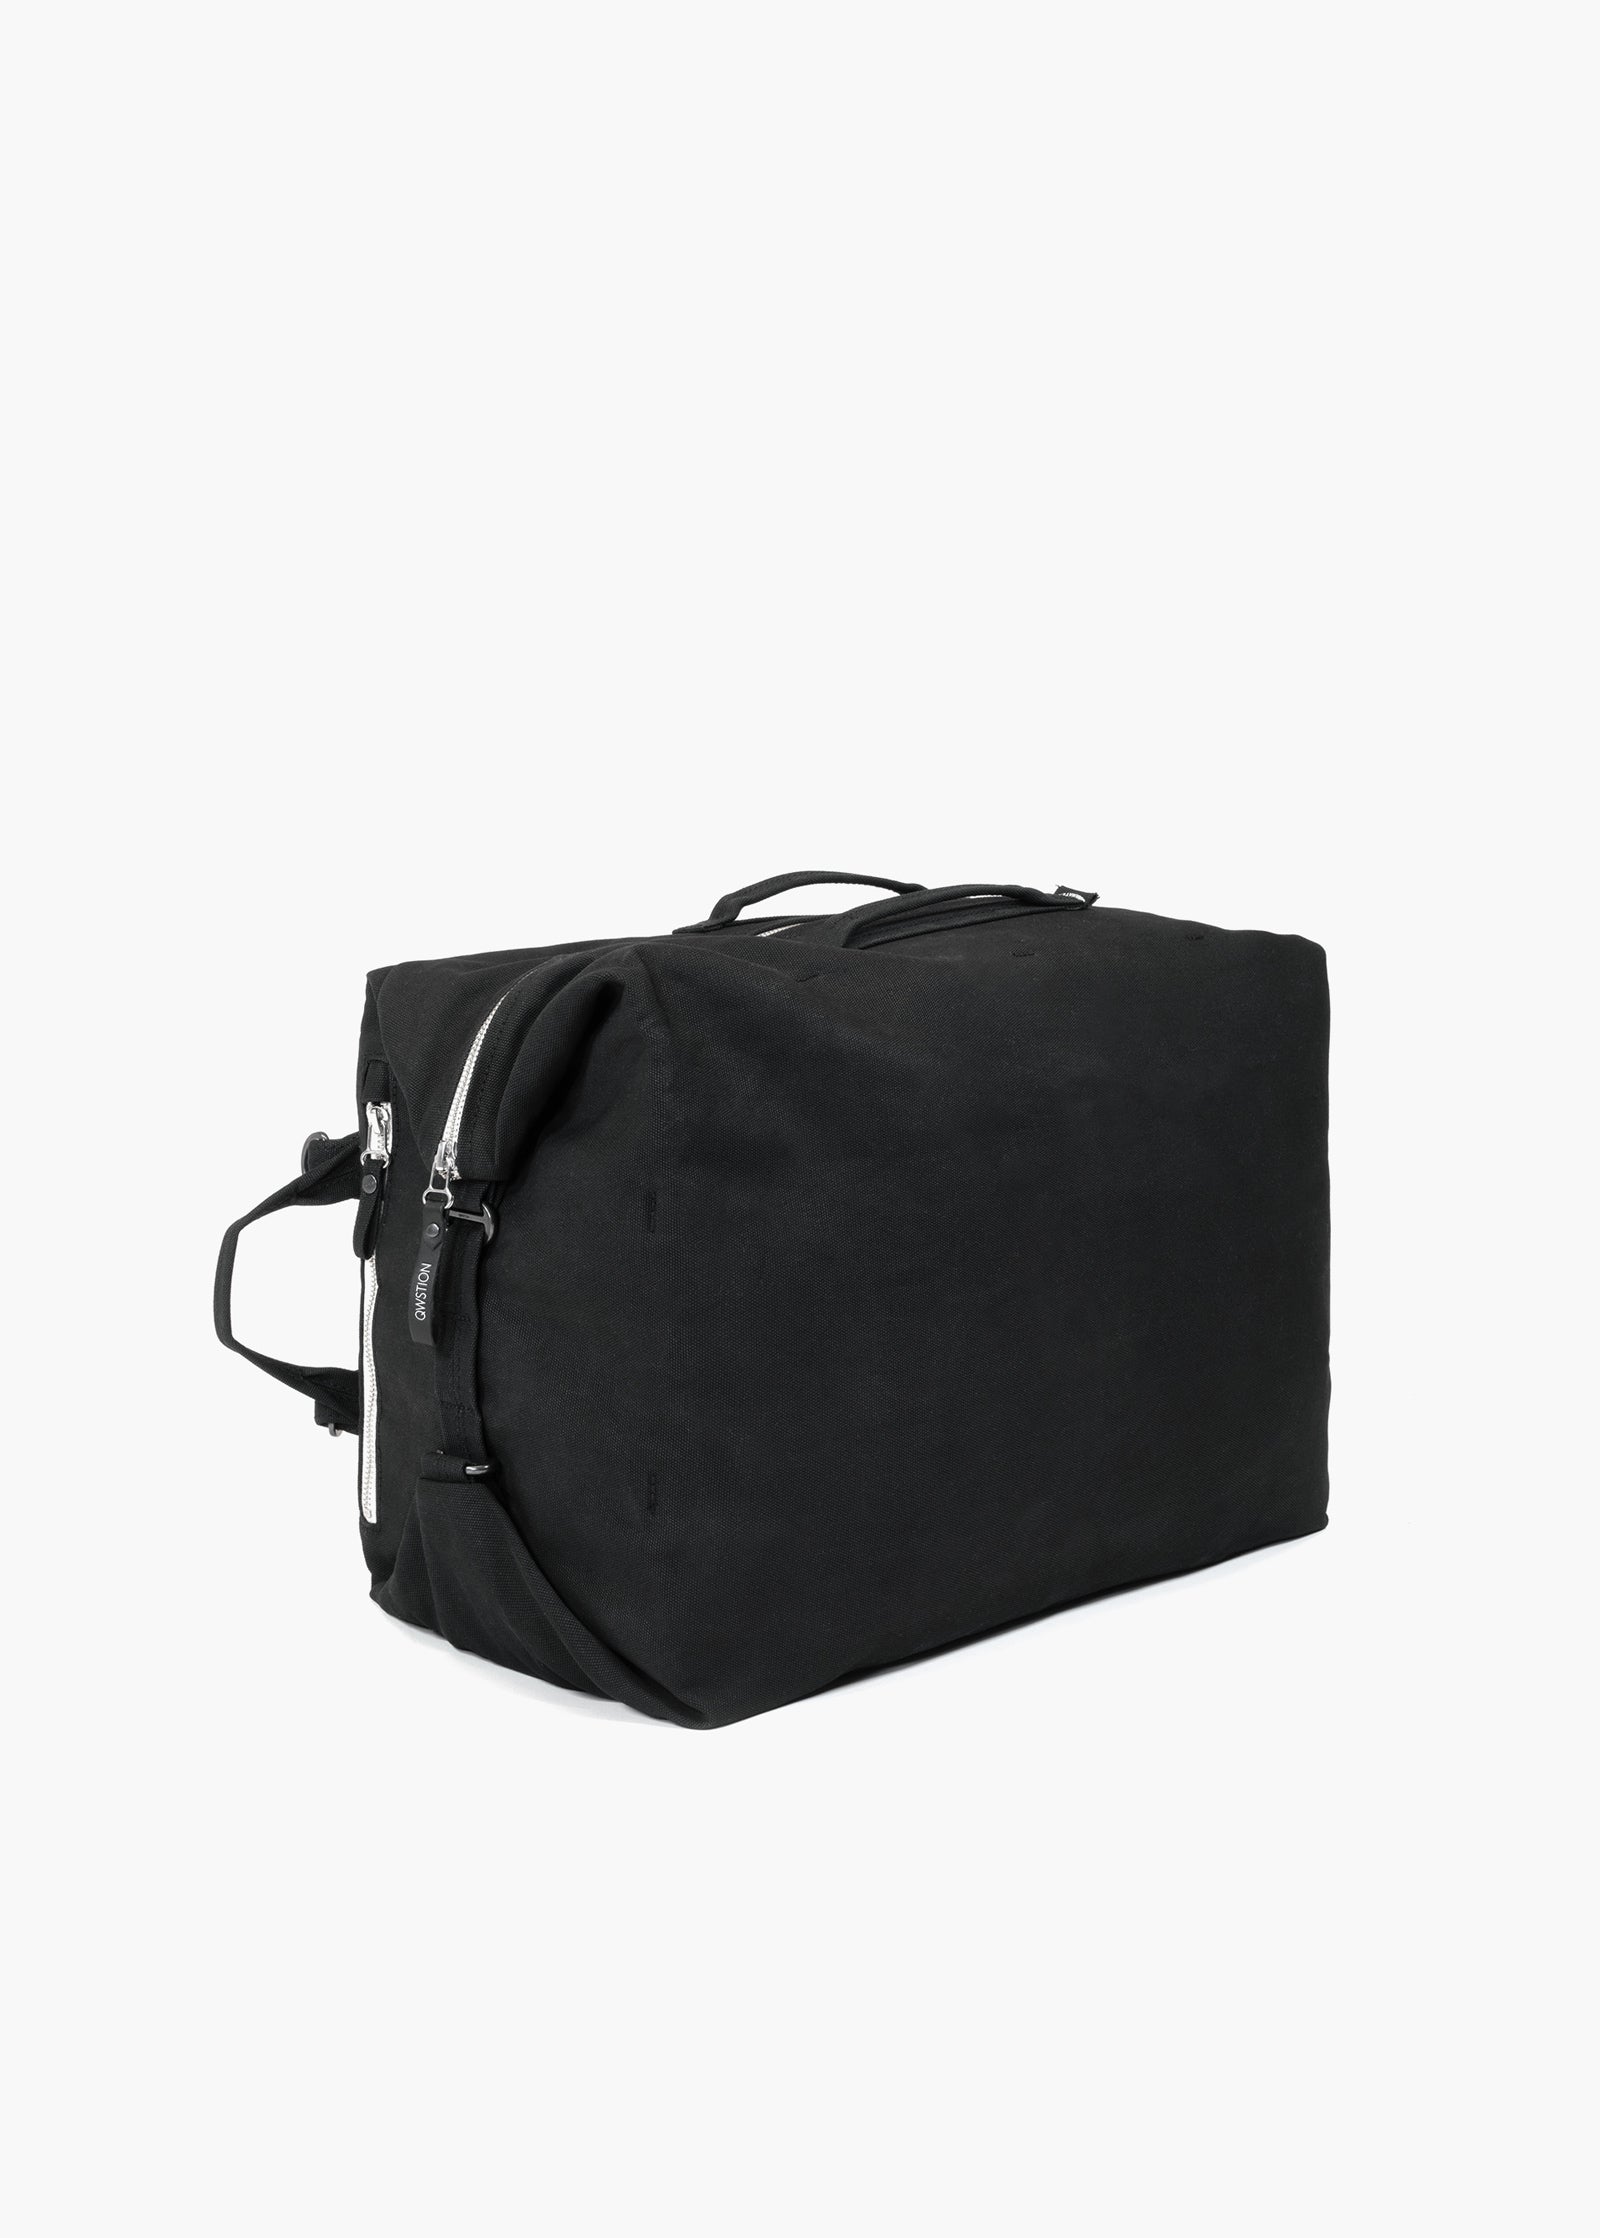 Travel Pack – All Black